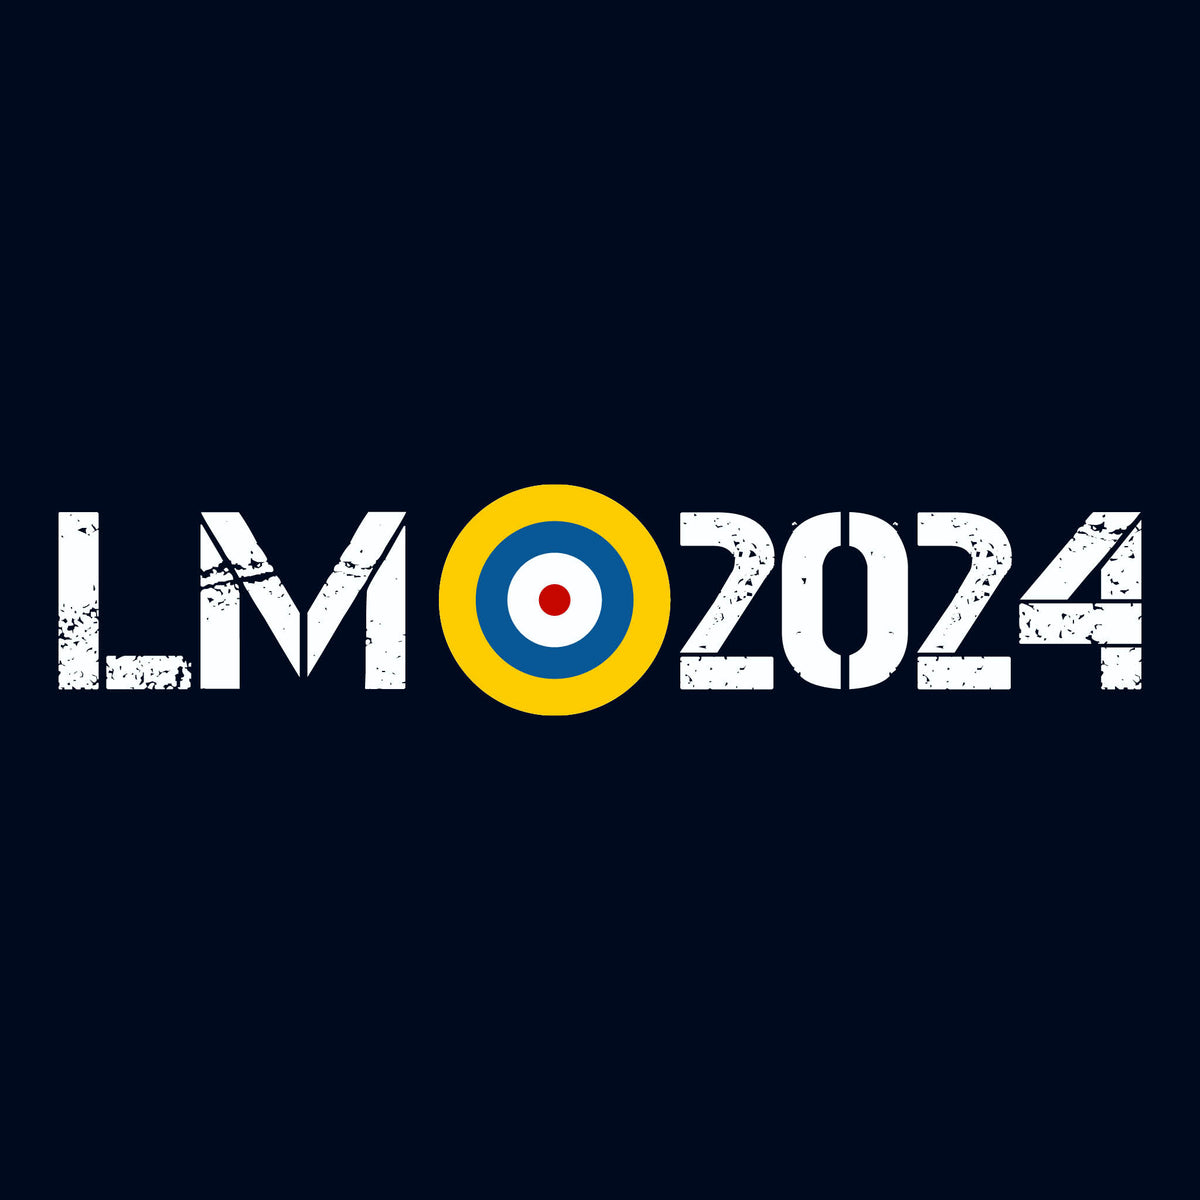 RAF LM 2024